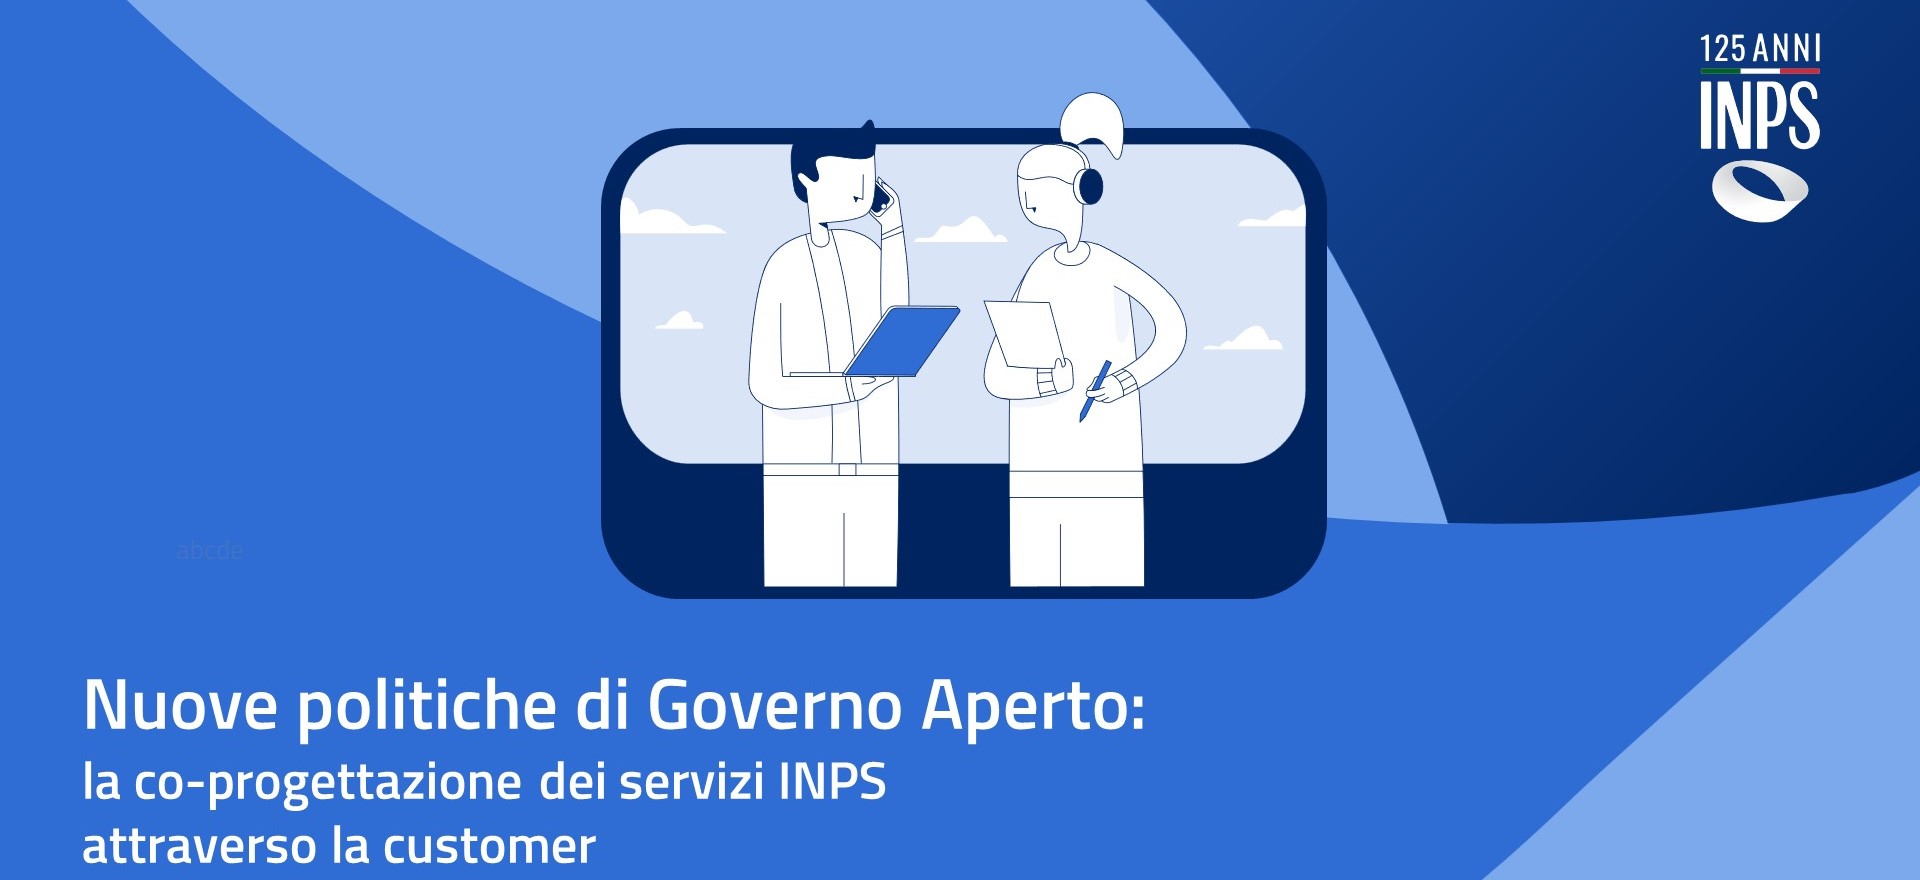 Nuove politiche di Governo Aperto: la co-progettazione dei servizi INPS attraverso la customer